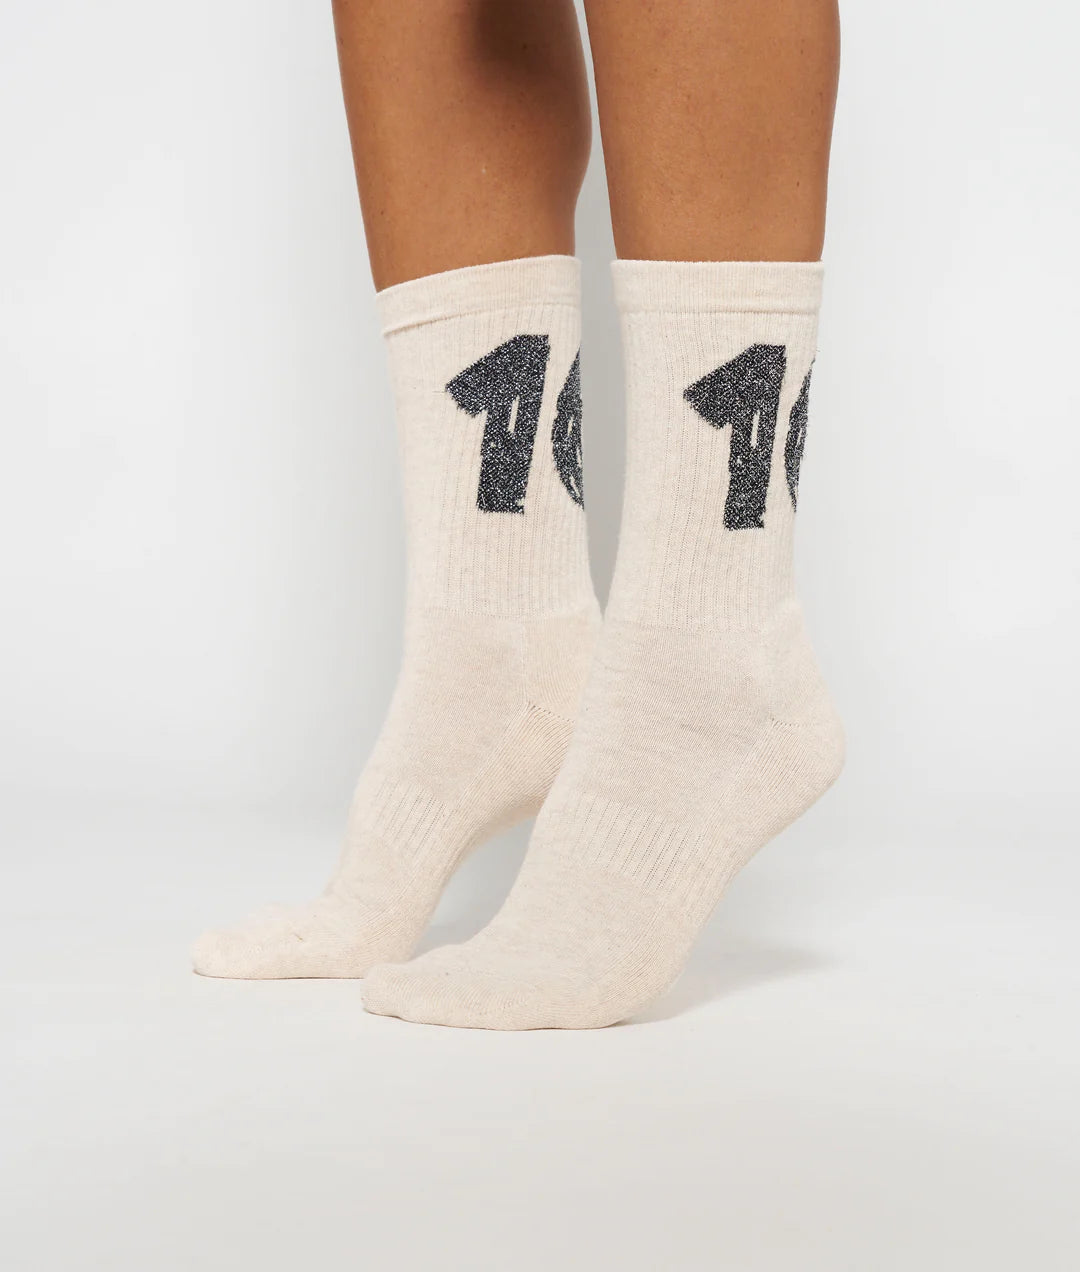 Socks 10 white melee 39/42